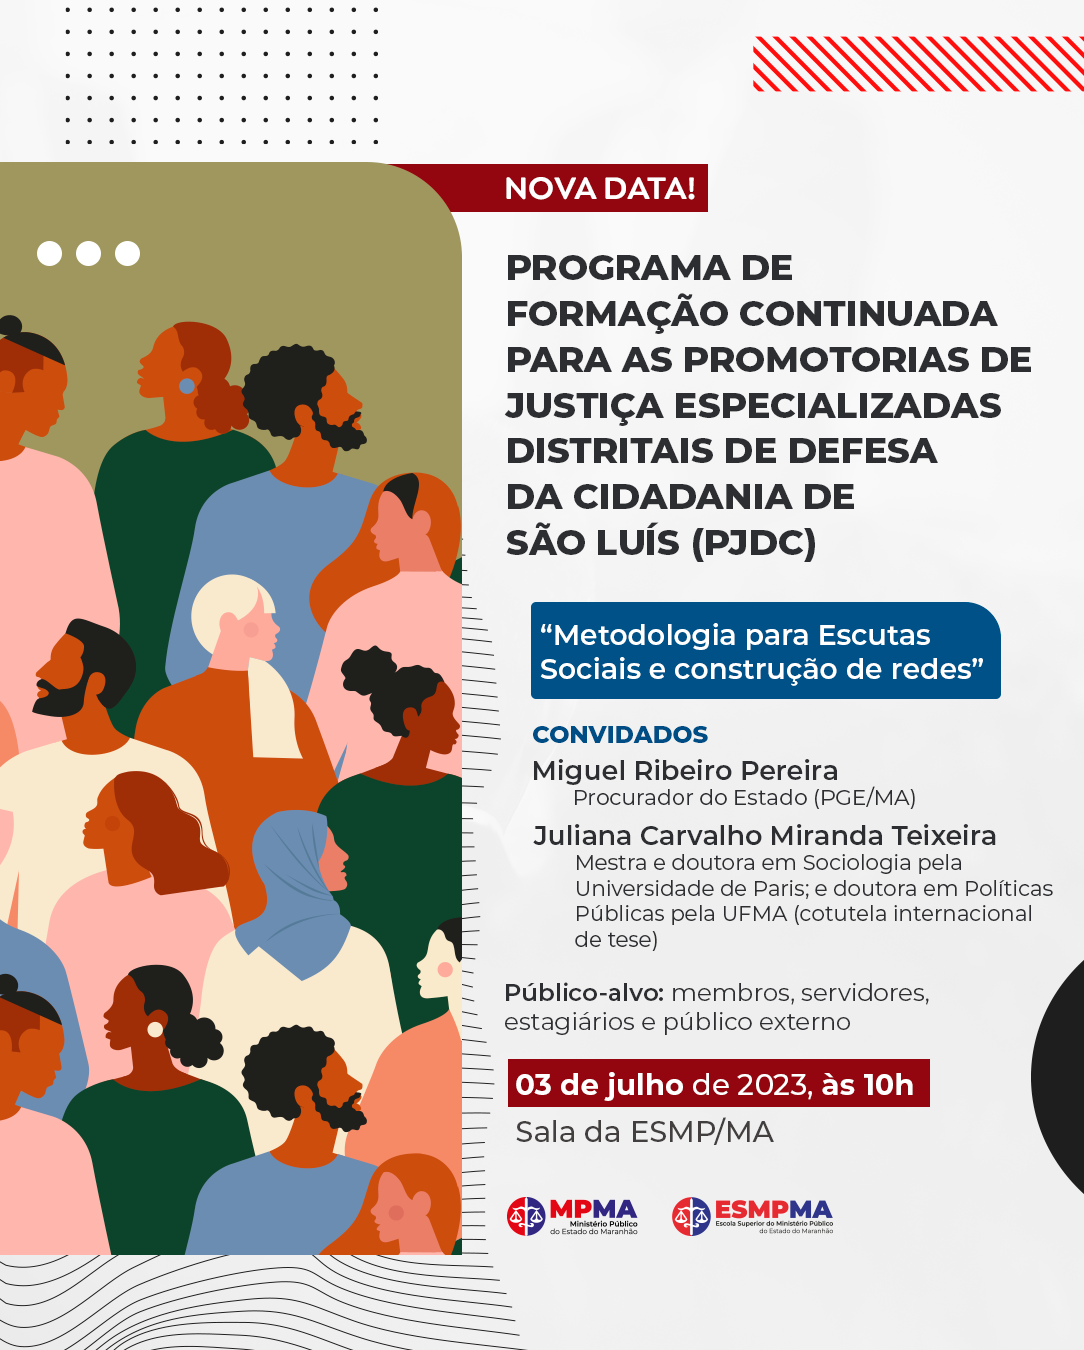 Programa de Formação Continuada para as Promotorias de Justiça Especializadas Distritais de Defesa da Cidadania de São Luís (PJDC)